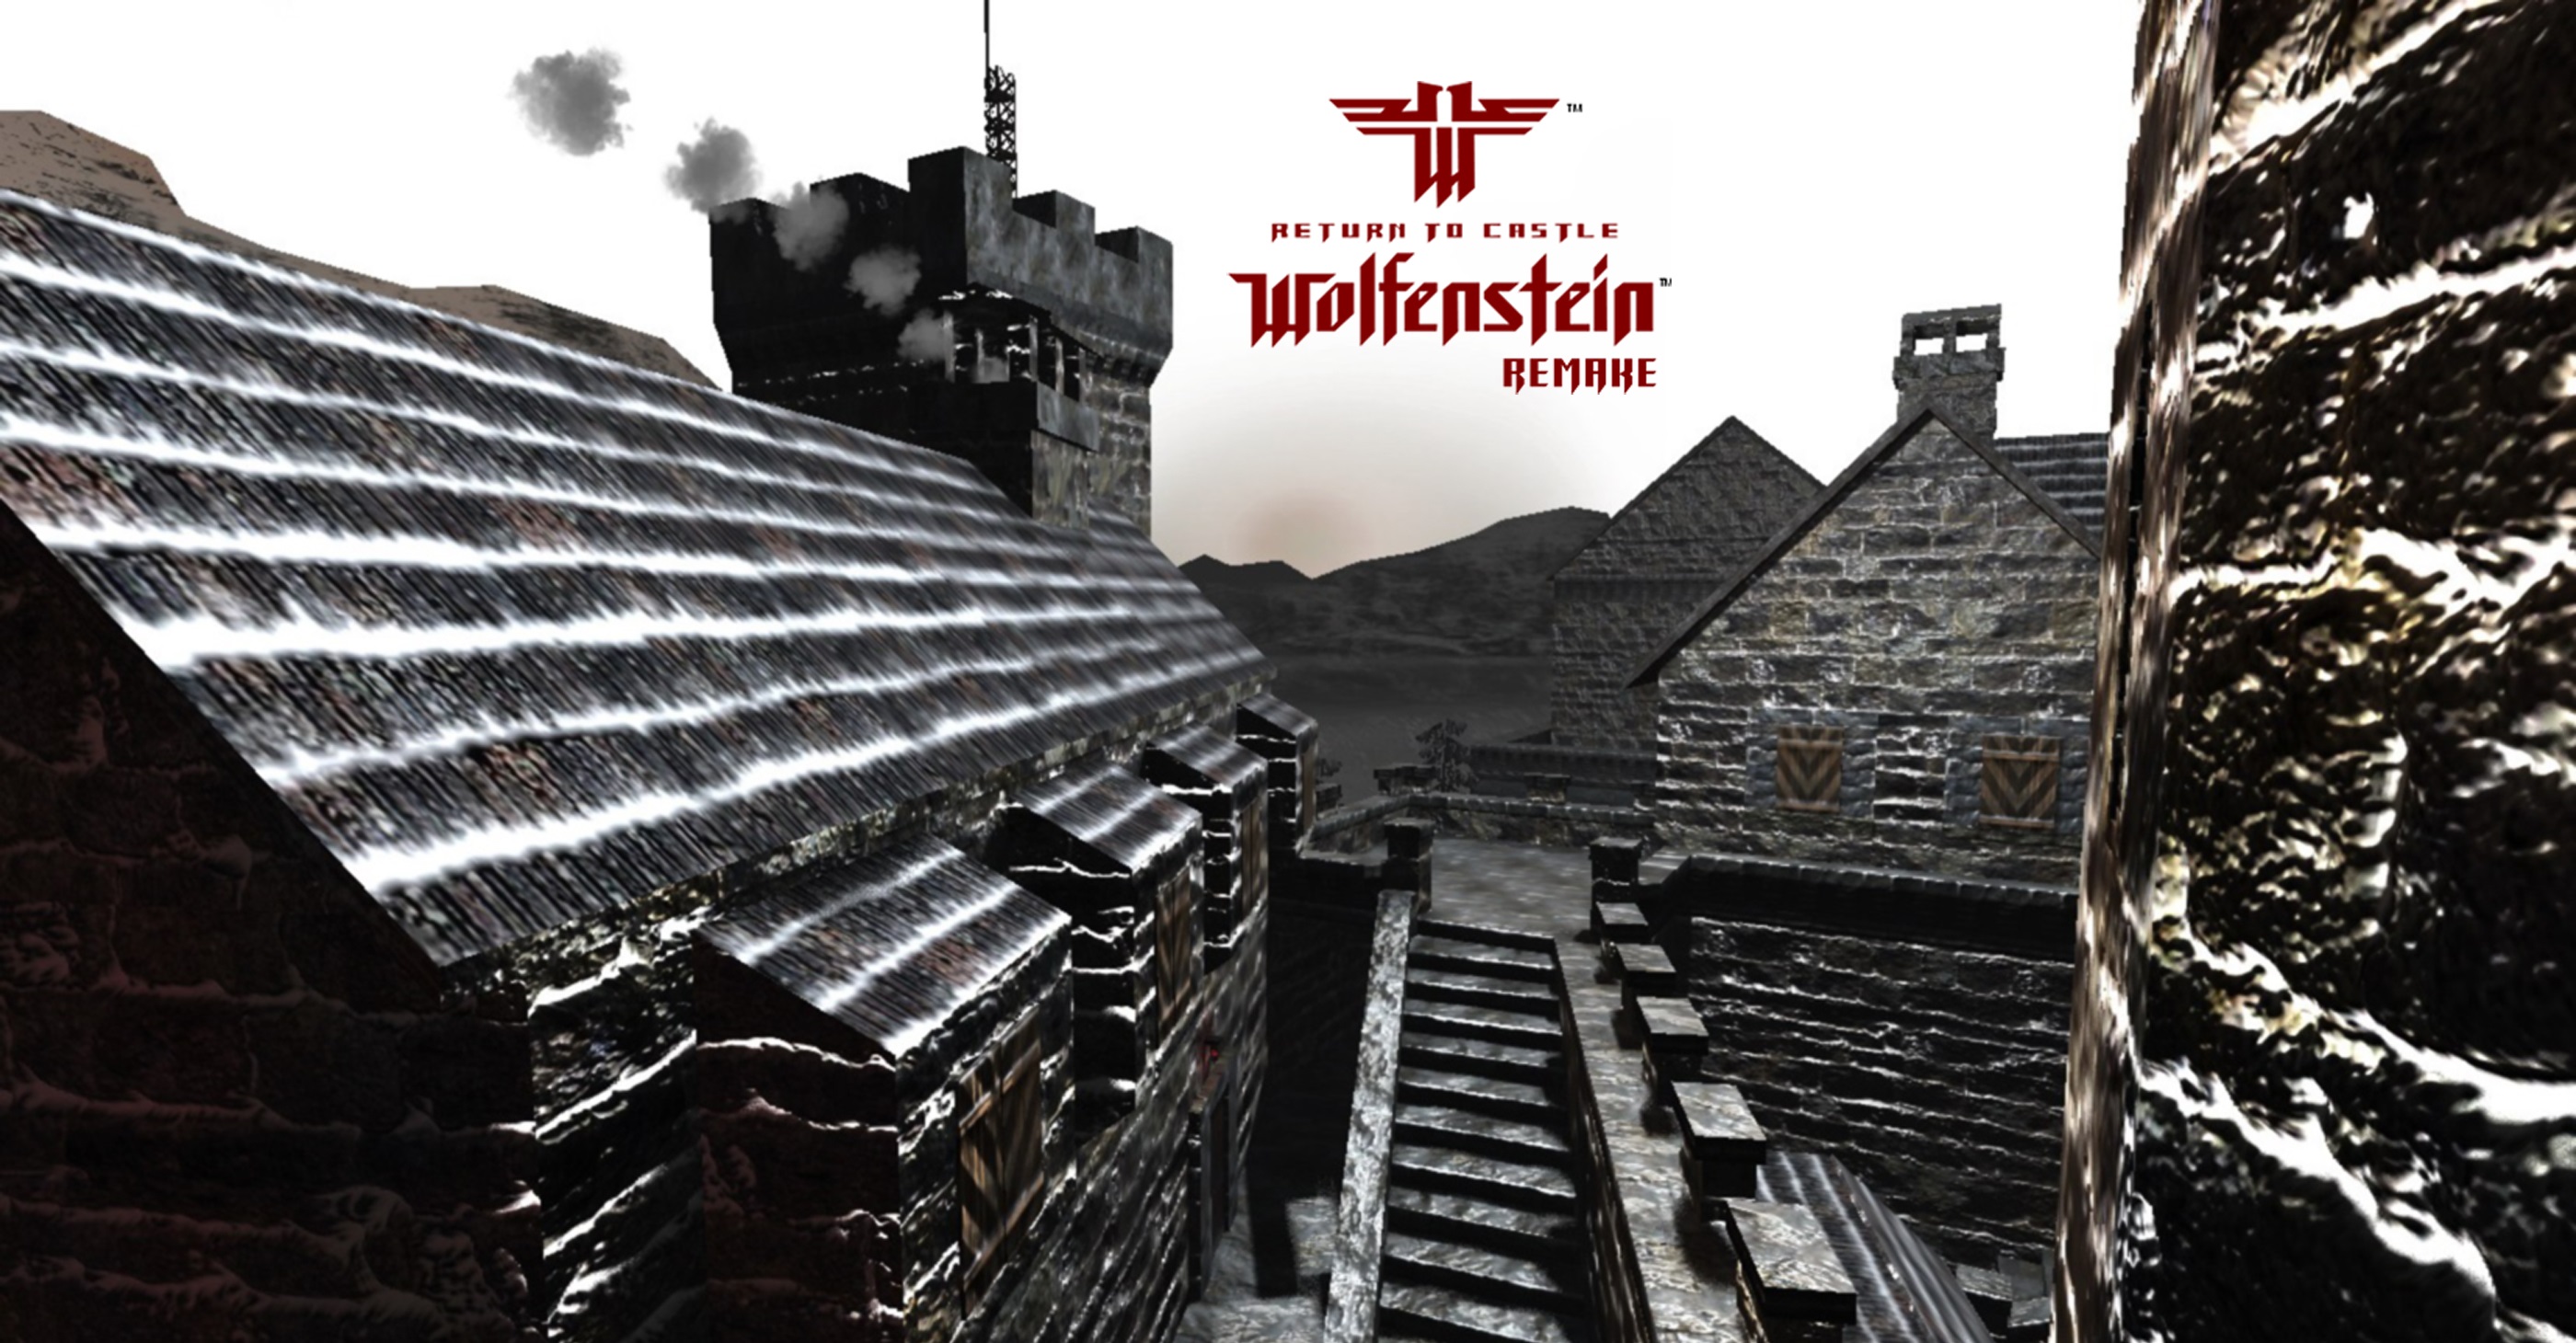 Return to Castle Wolfenstein Wallpapers